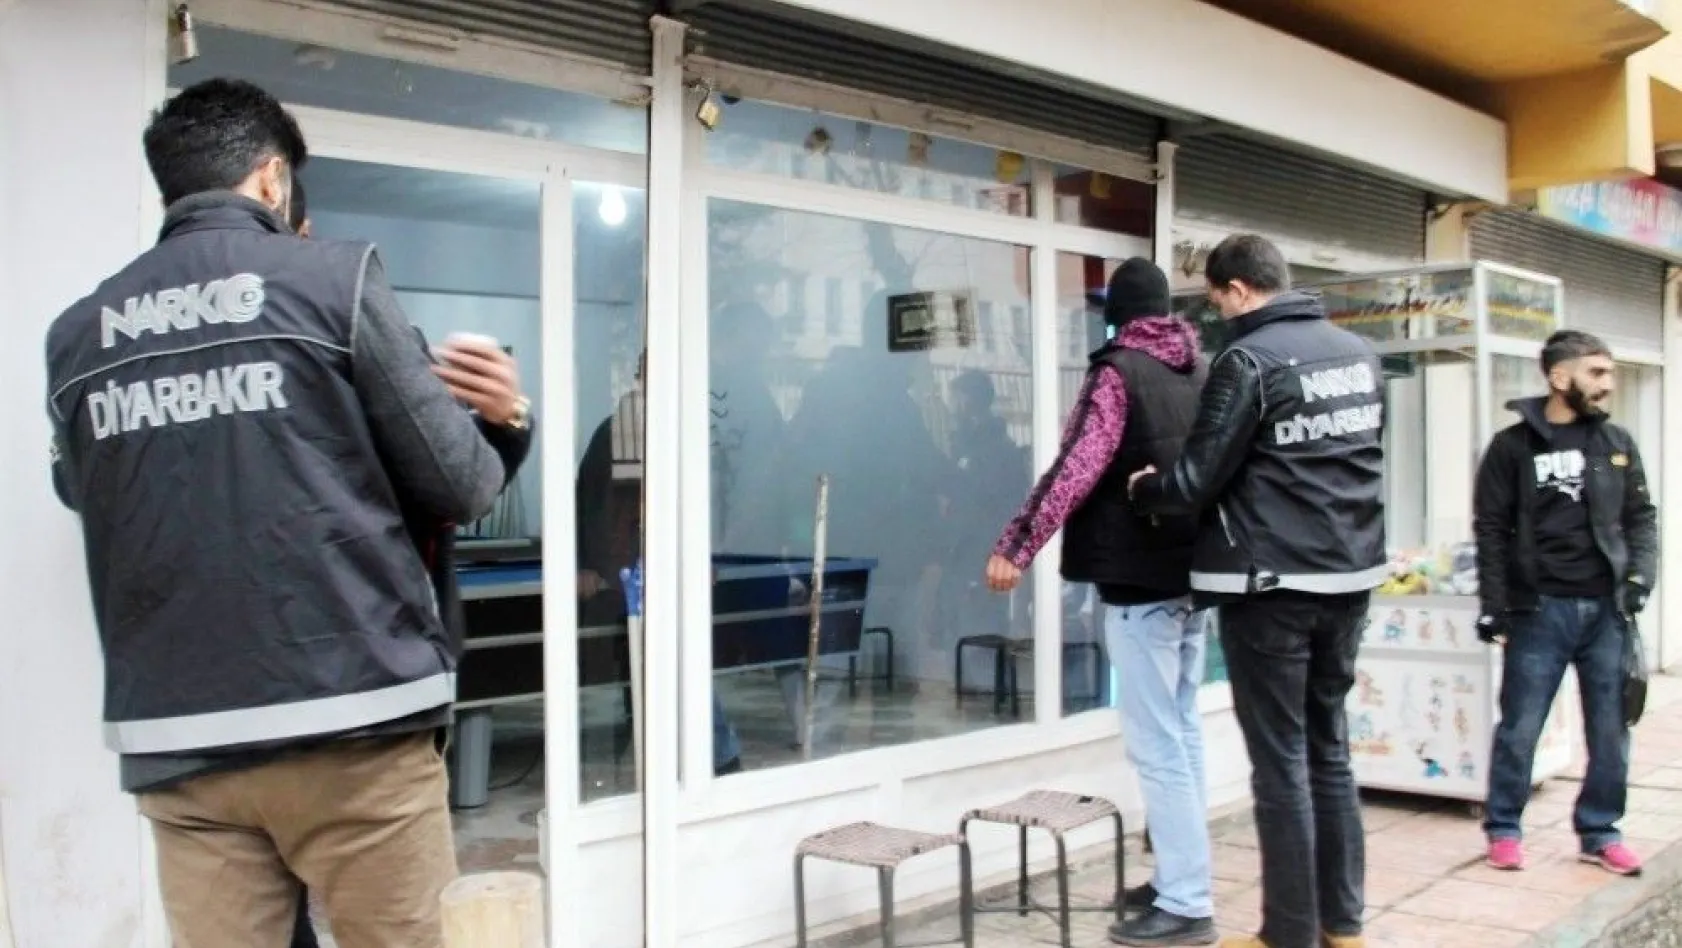 Diyarbakır polisinden okul çevrelerinde denetim
